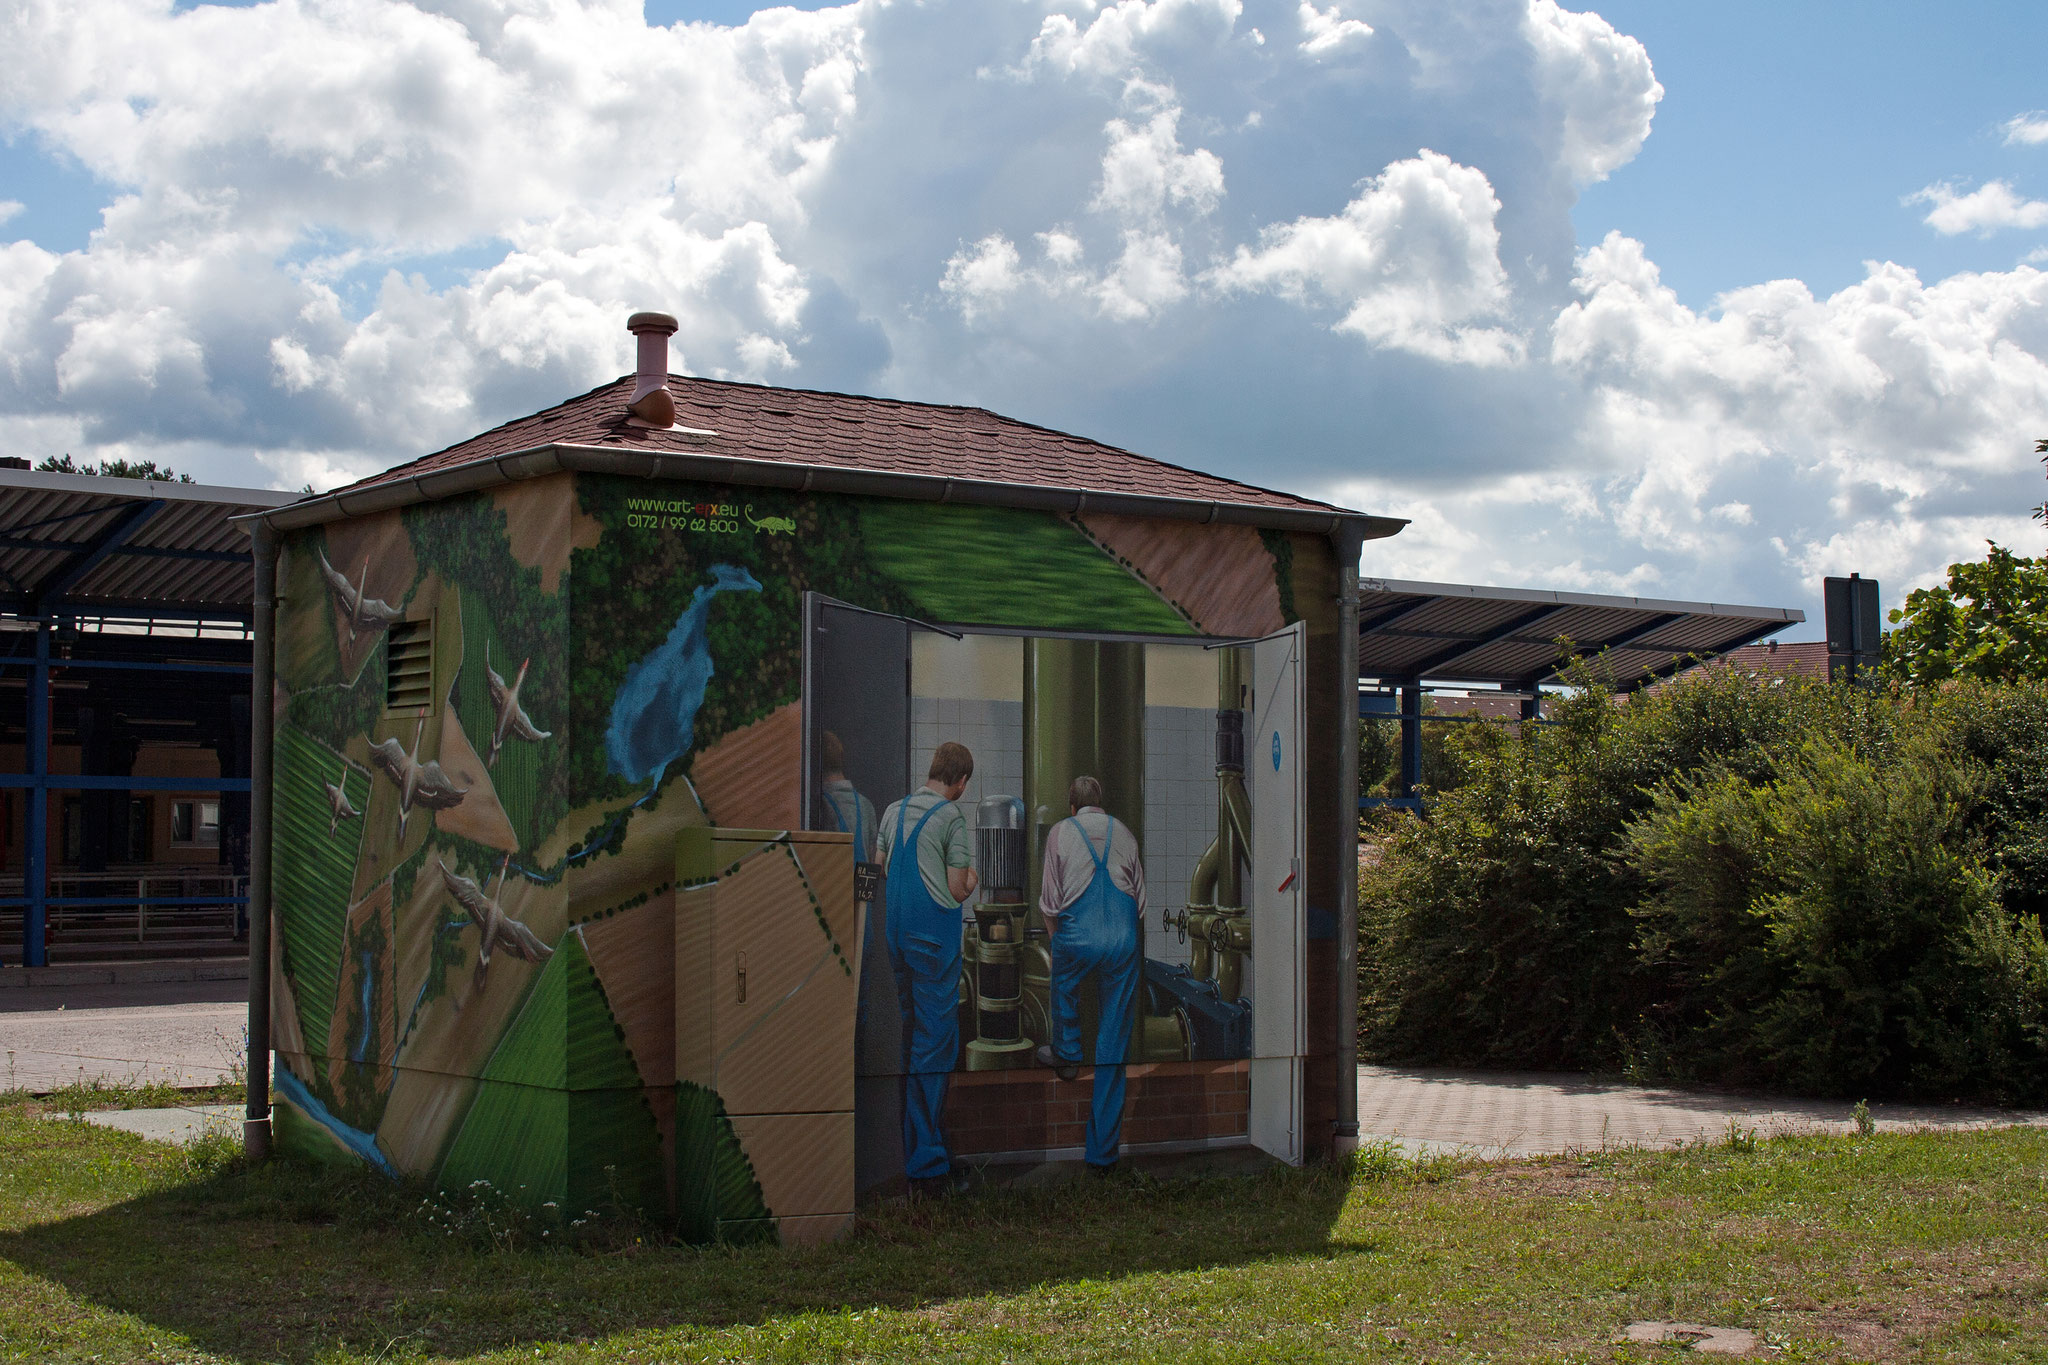 Graffity-Kunst am Trafohaus